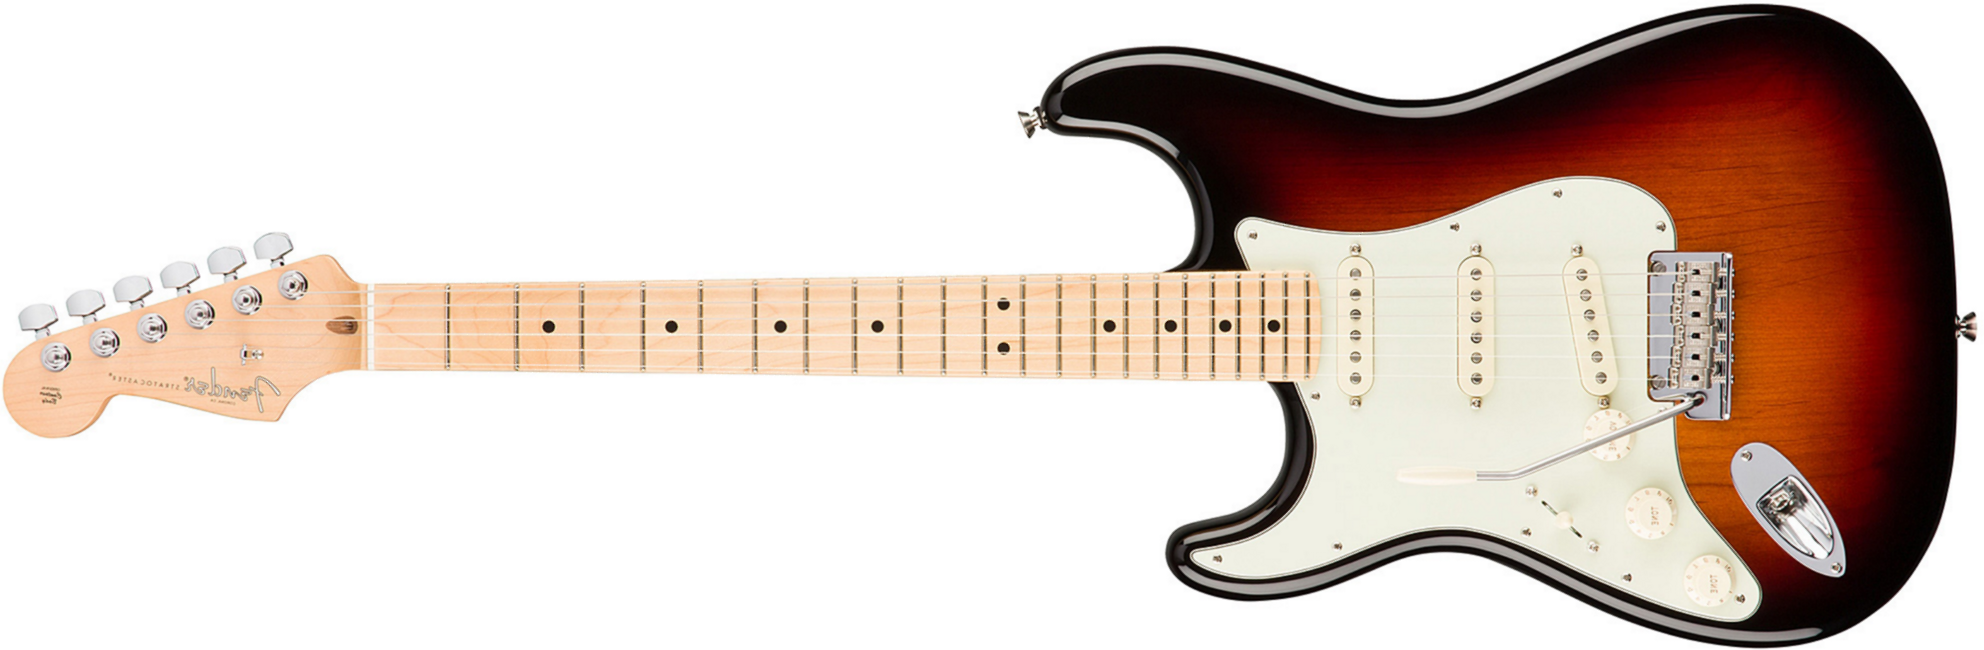 Fender Strat American Professional Lh Usa Gaucher 3s Mn - 3-color Sunburst - Linkshandige elektrische gitaar - Main picture